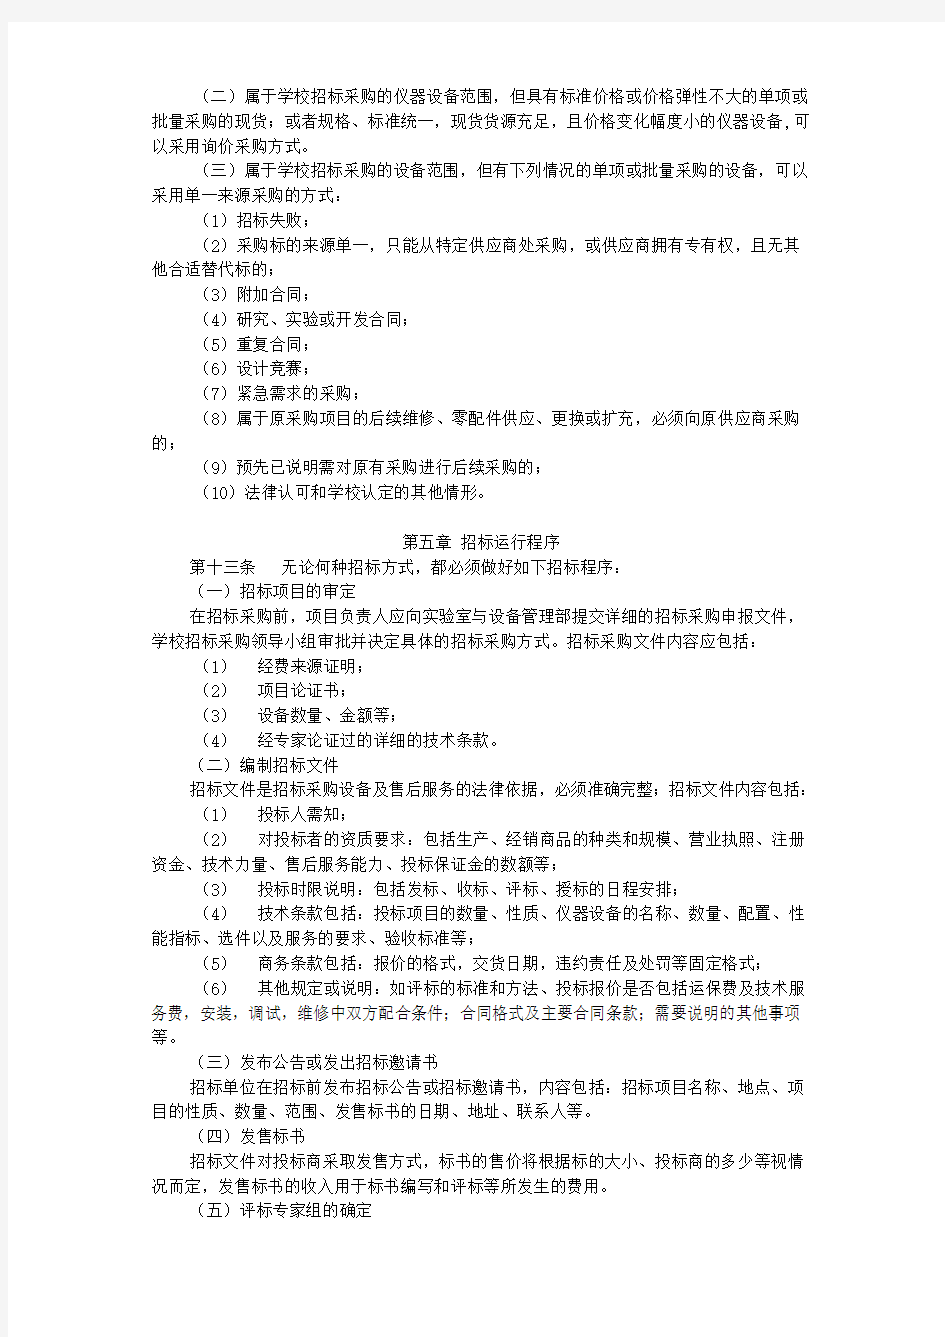 北京大学仪器设备招标采购管理办法